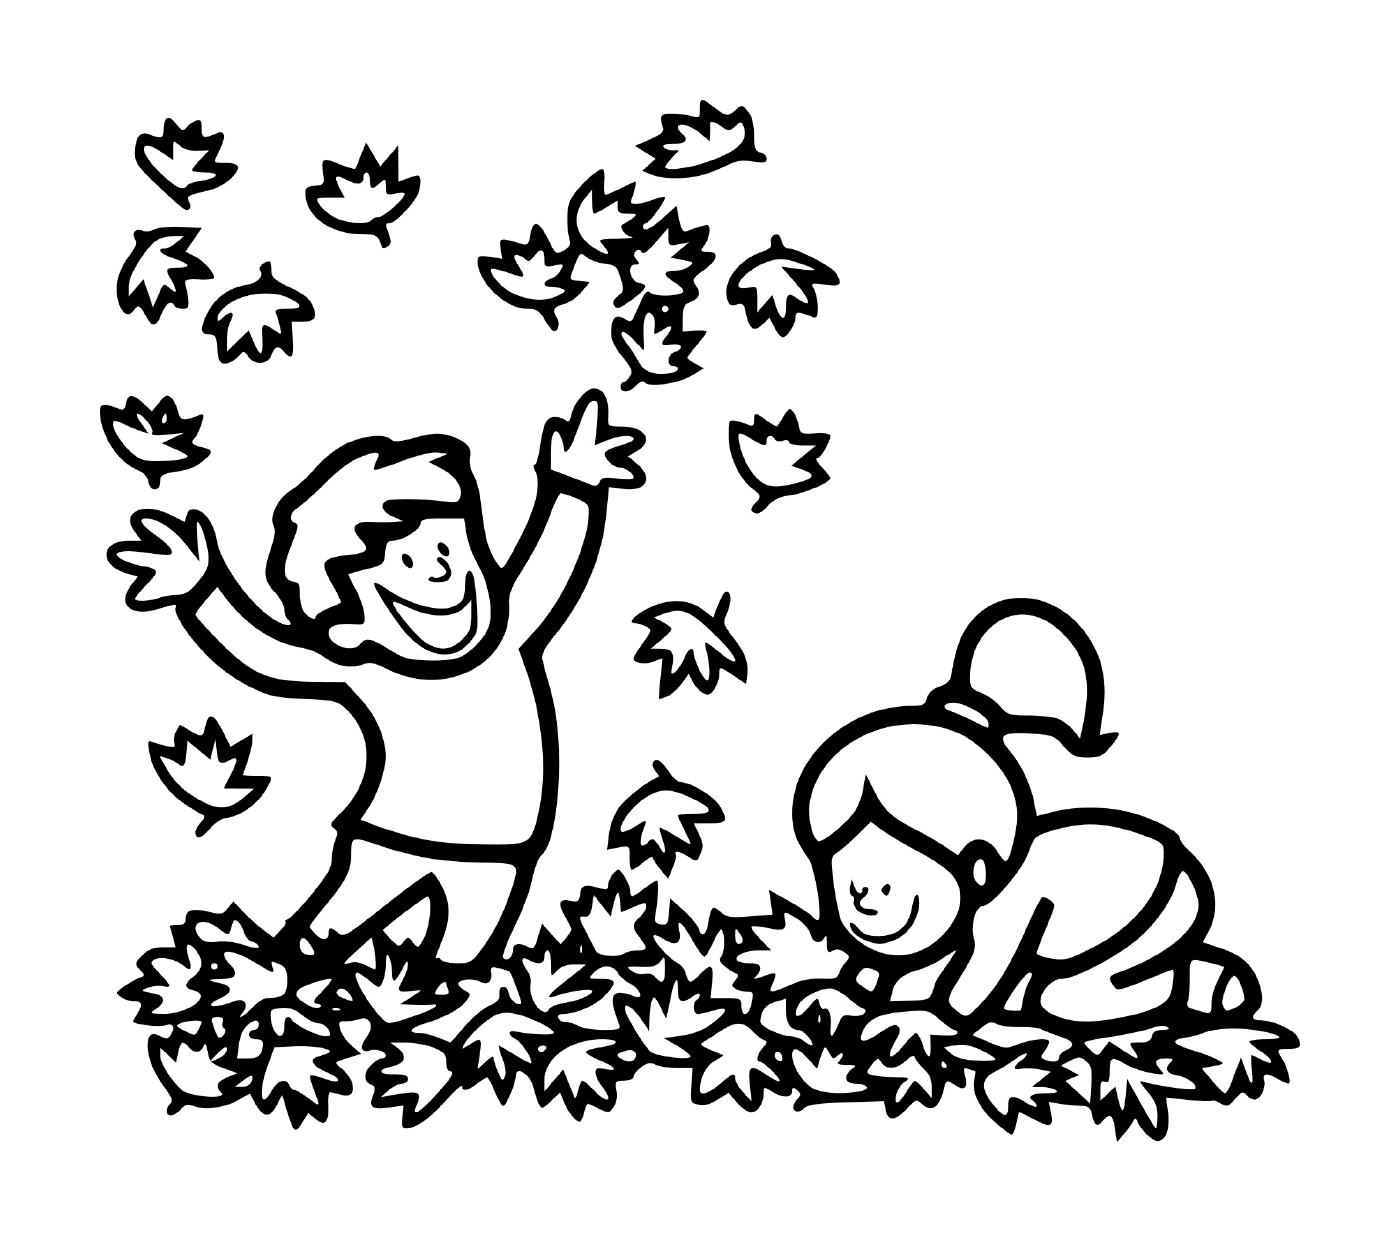  Ein Junge und ein Mädchen spielen in den Blättern 